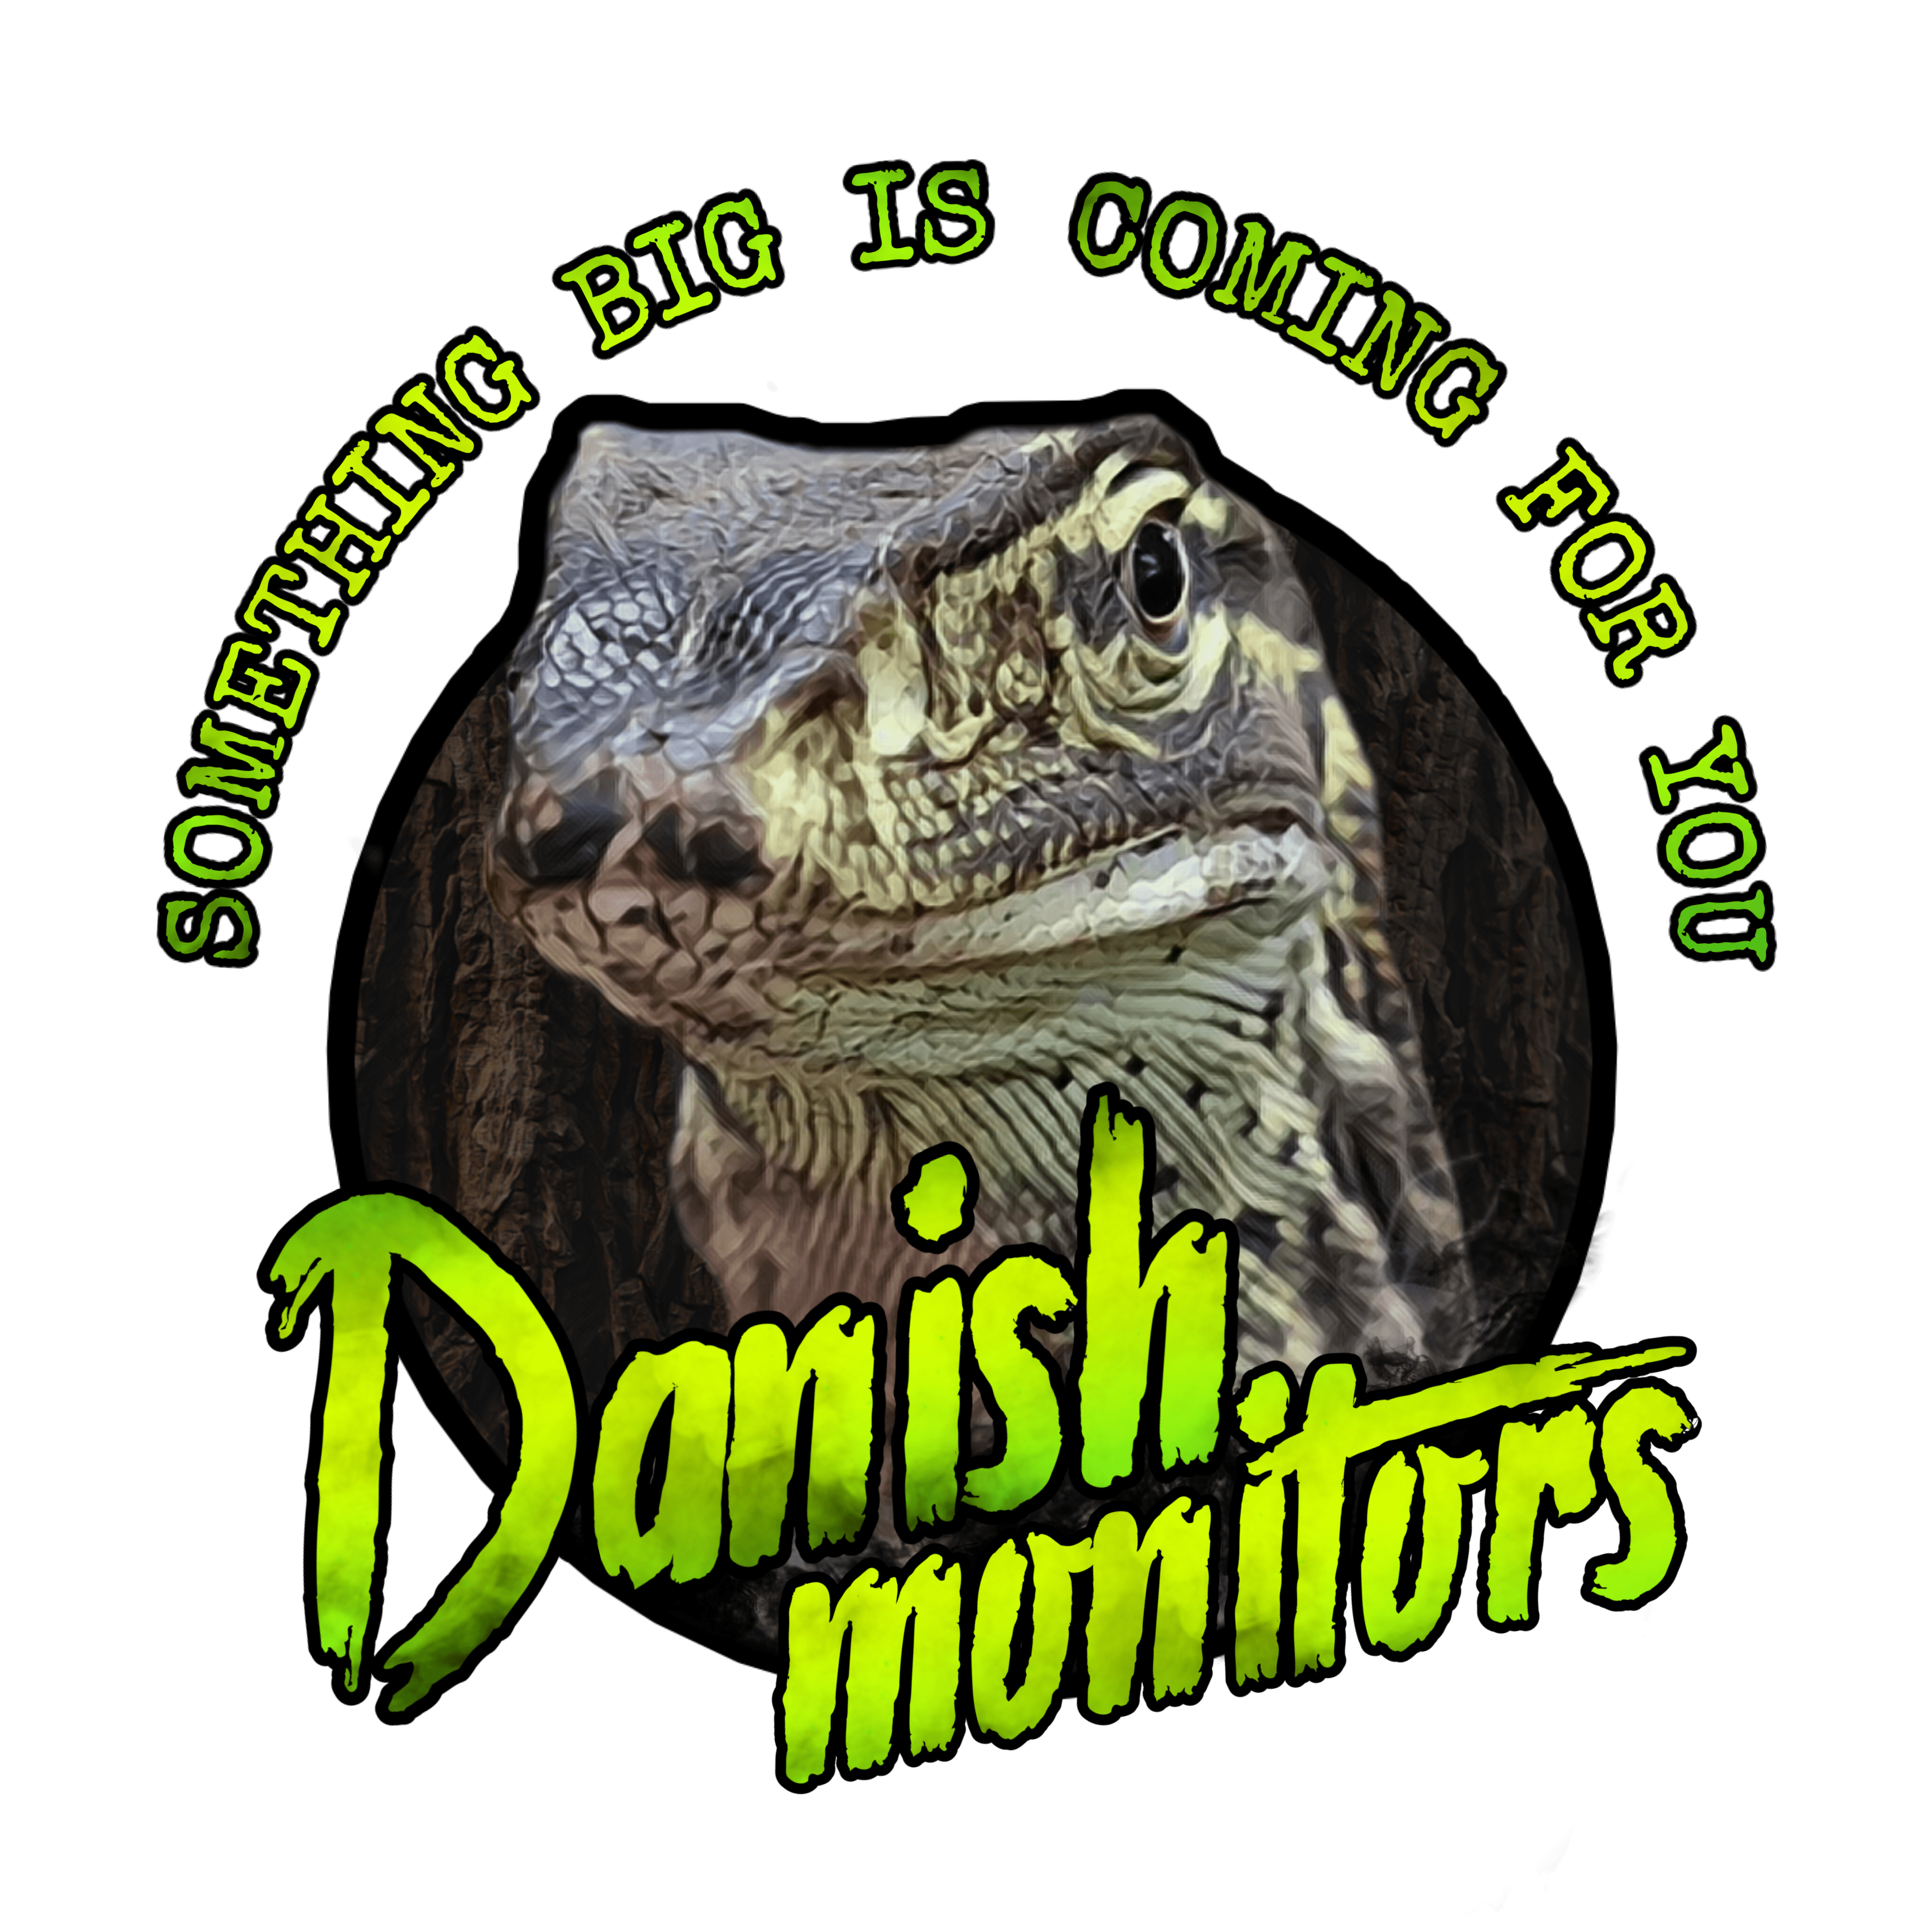 Danish Monitors